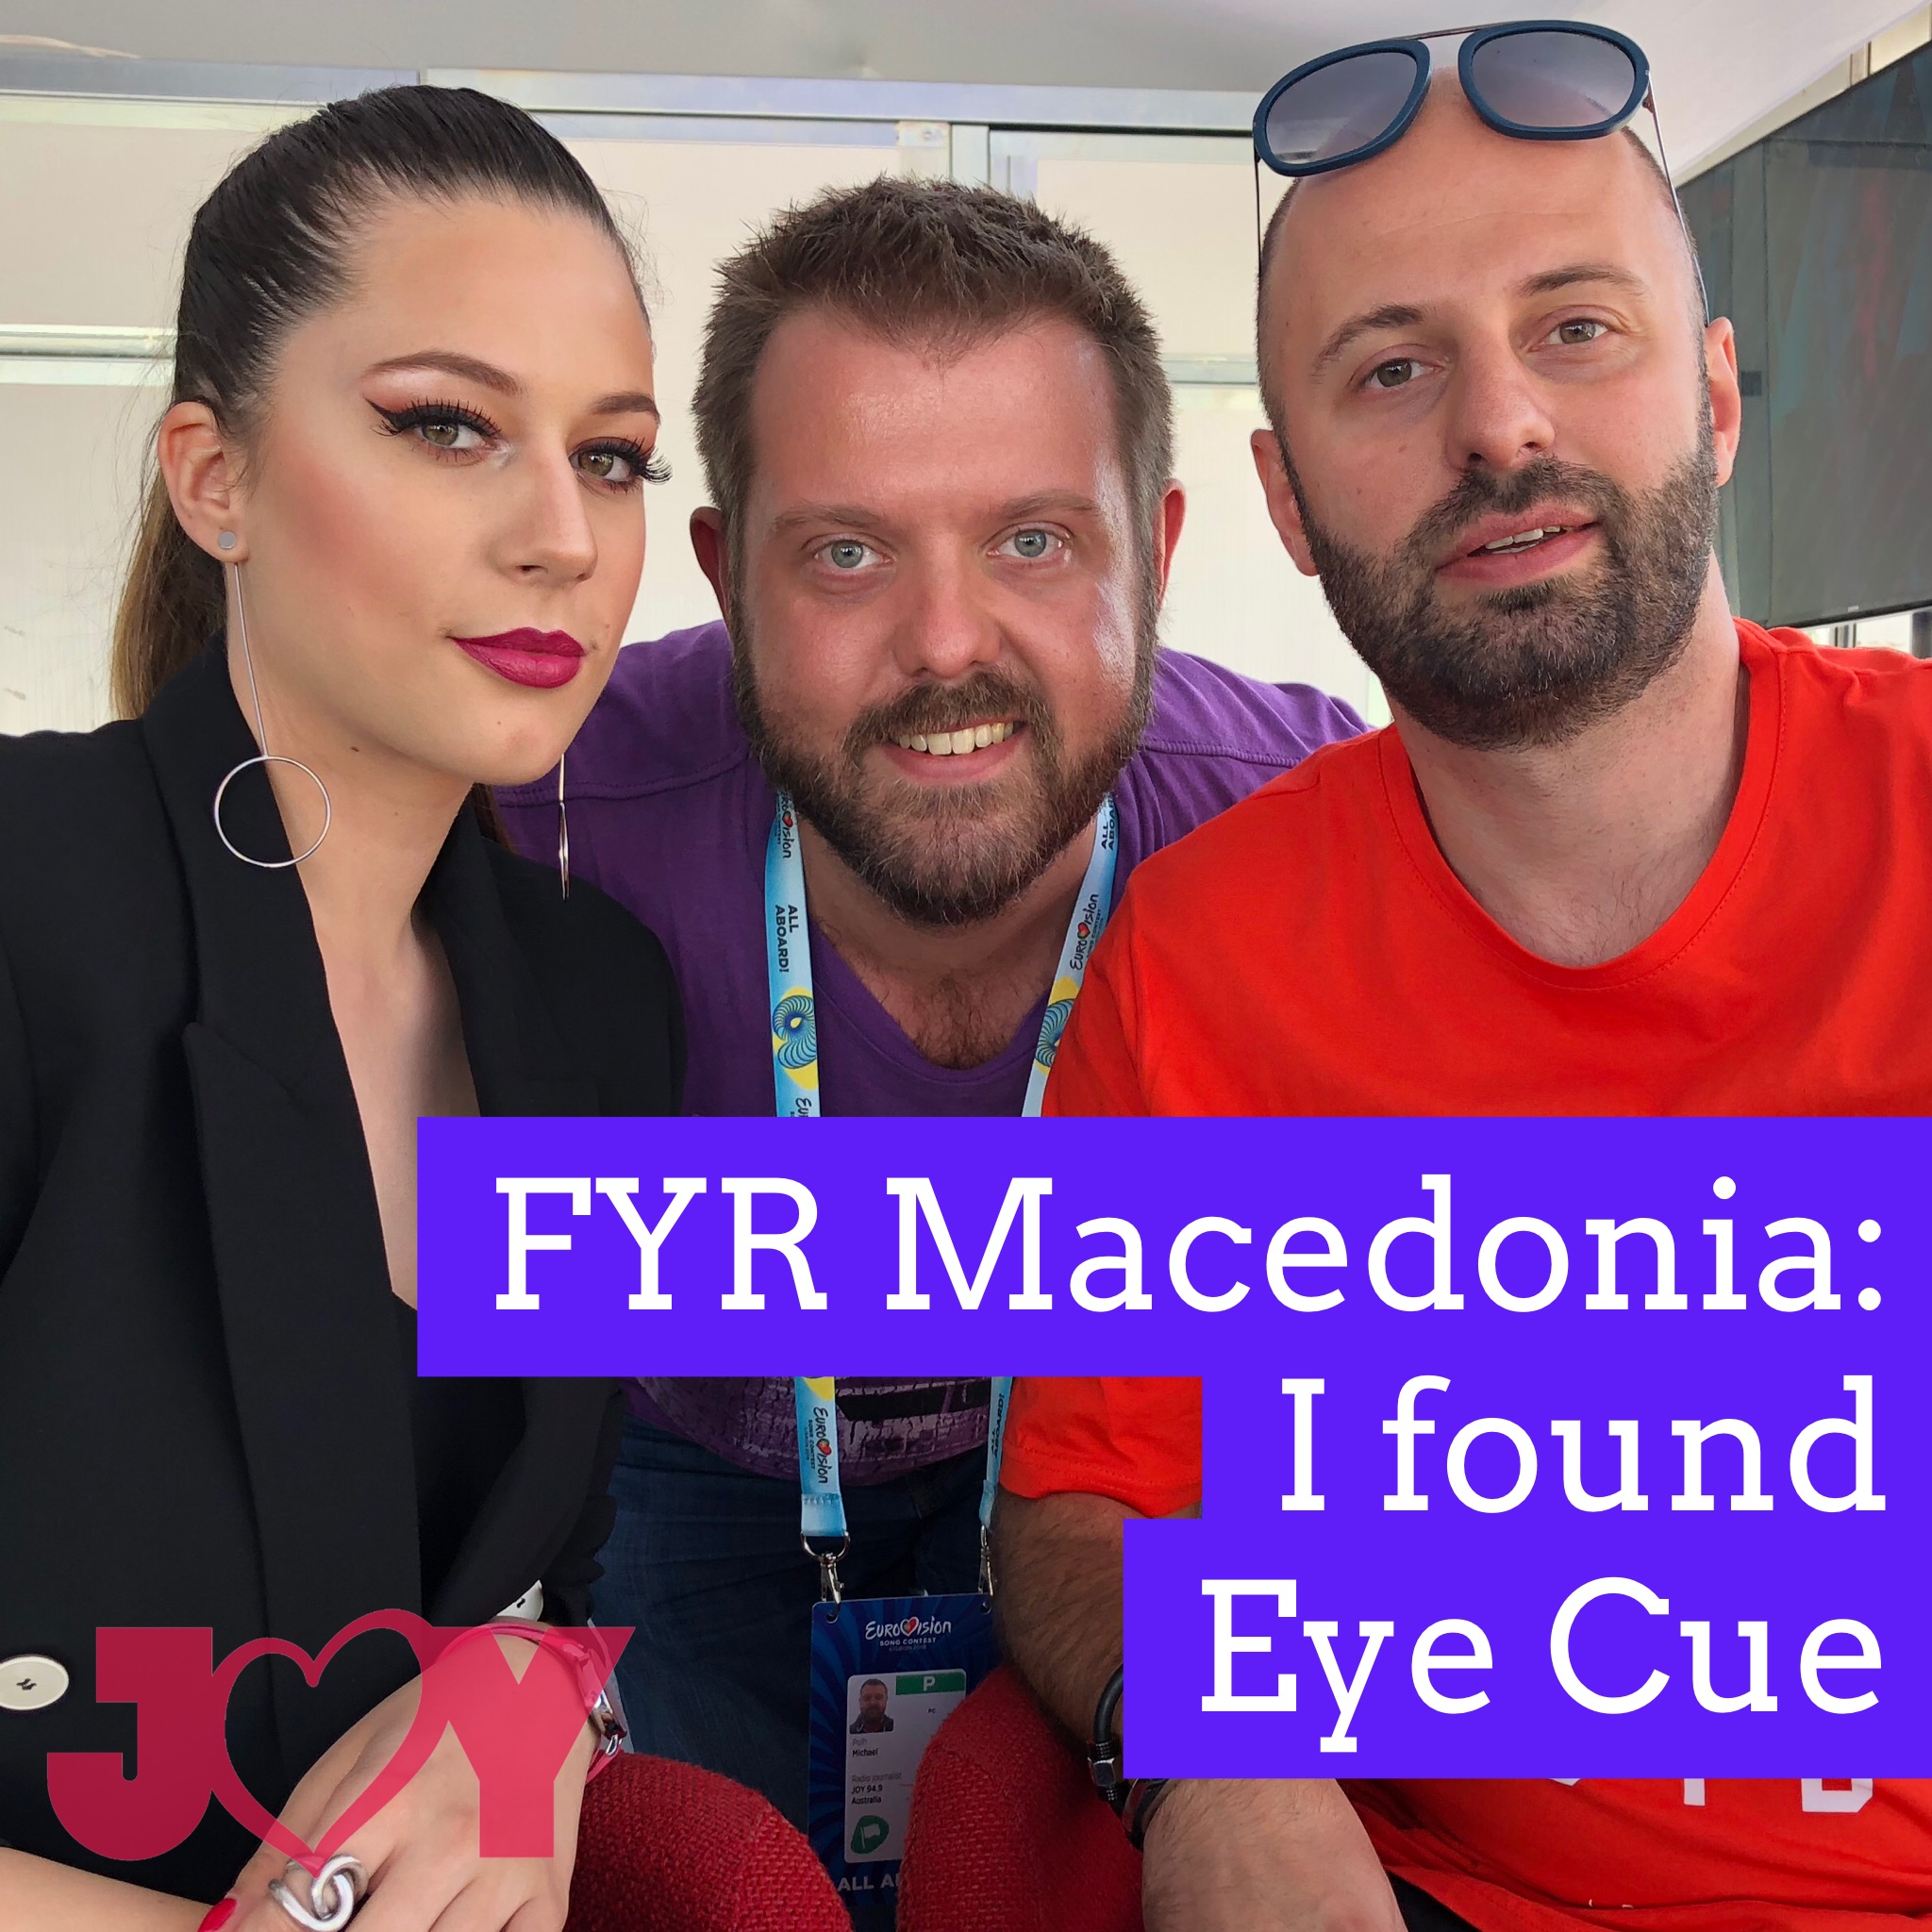 FYR Macedonia: I found Eye Cue